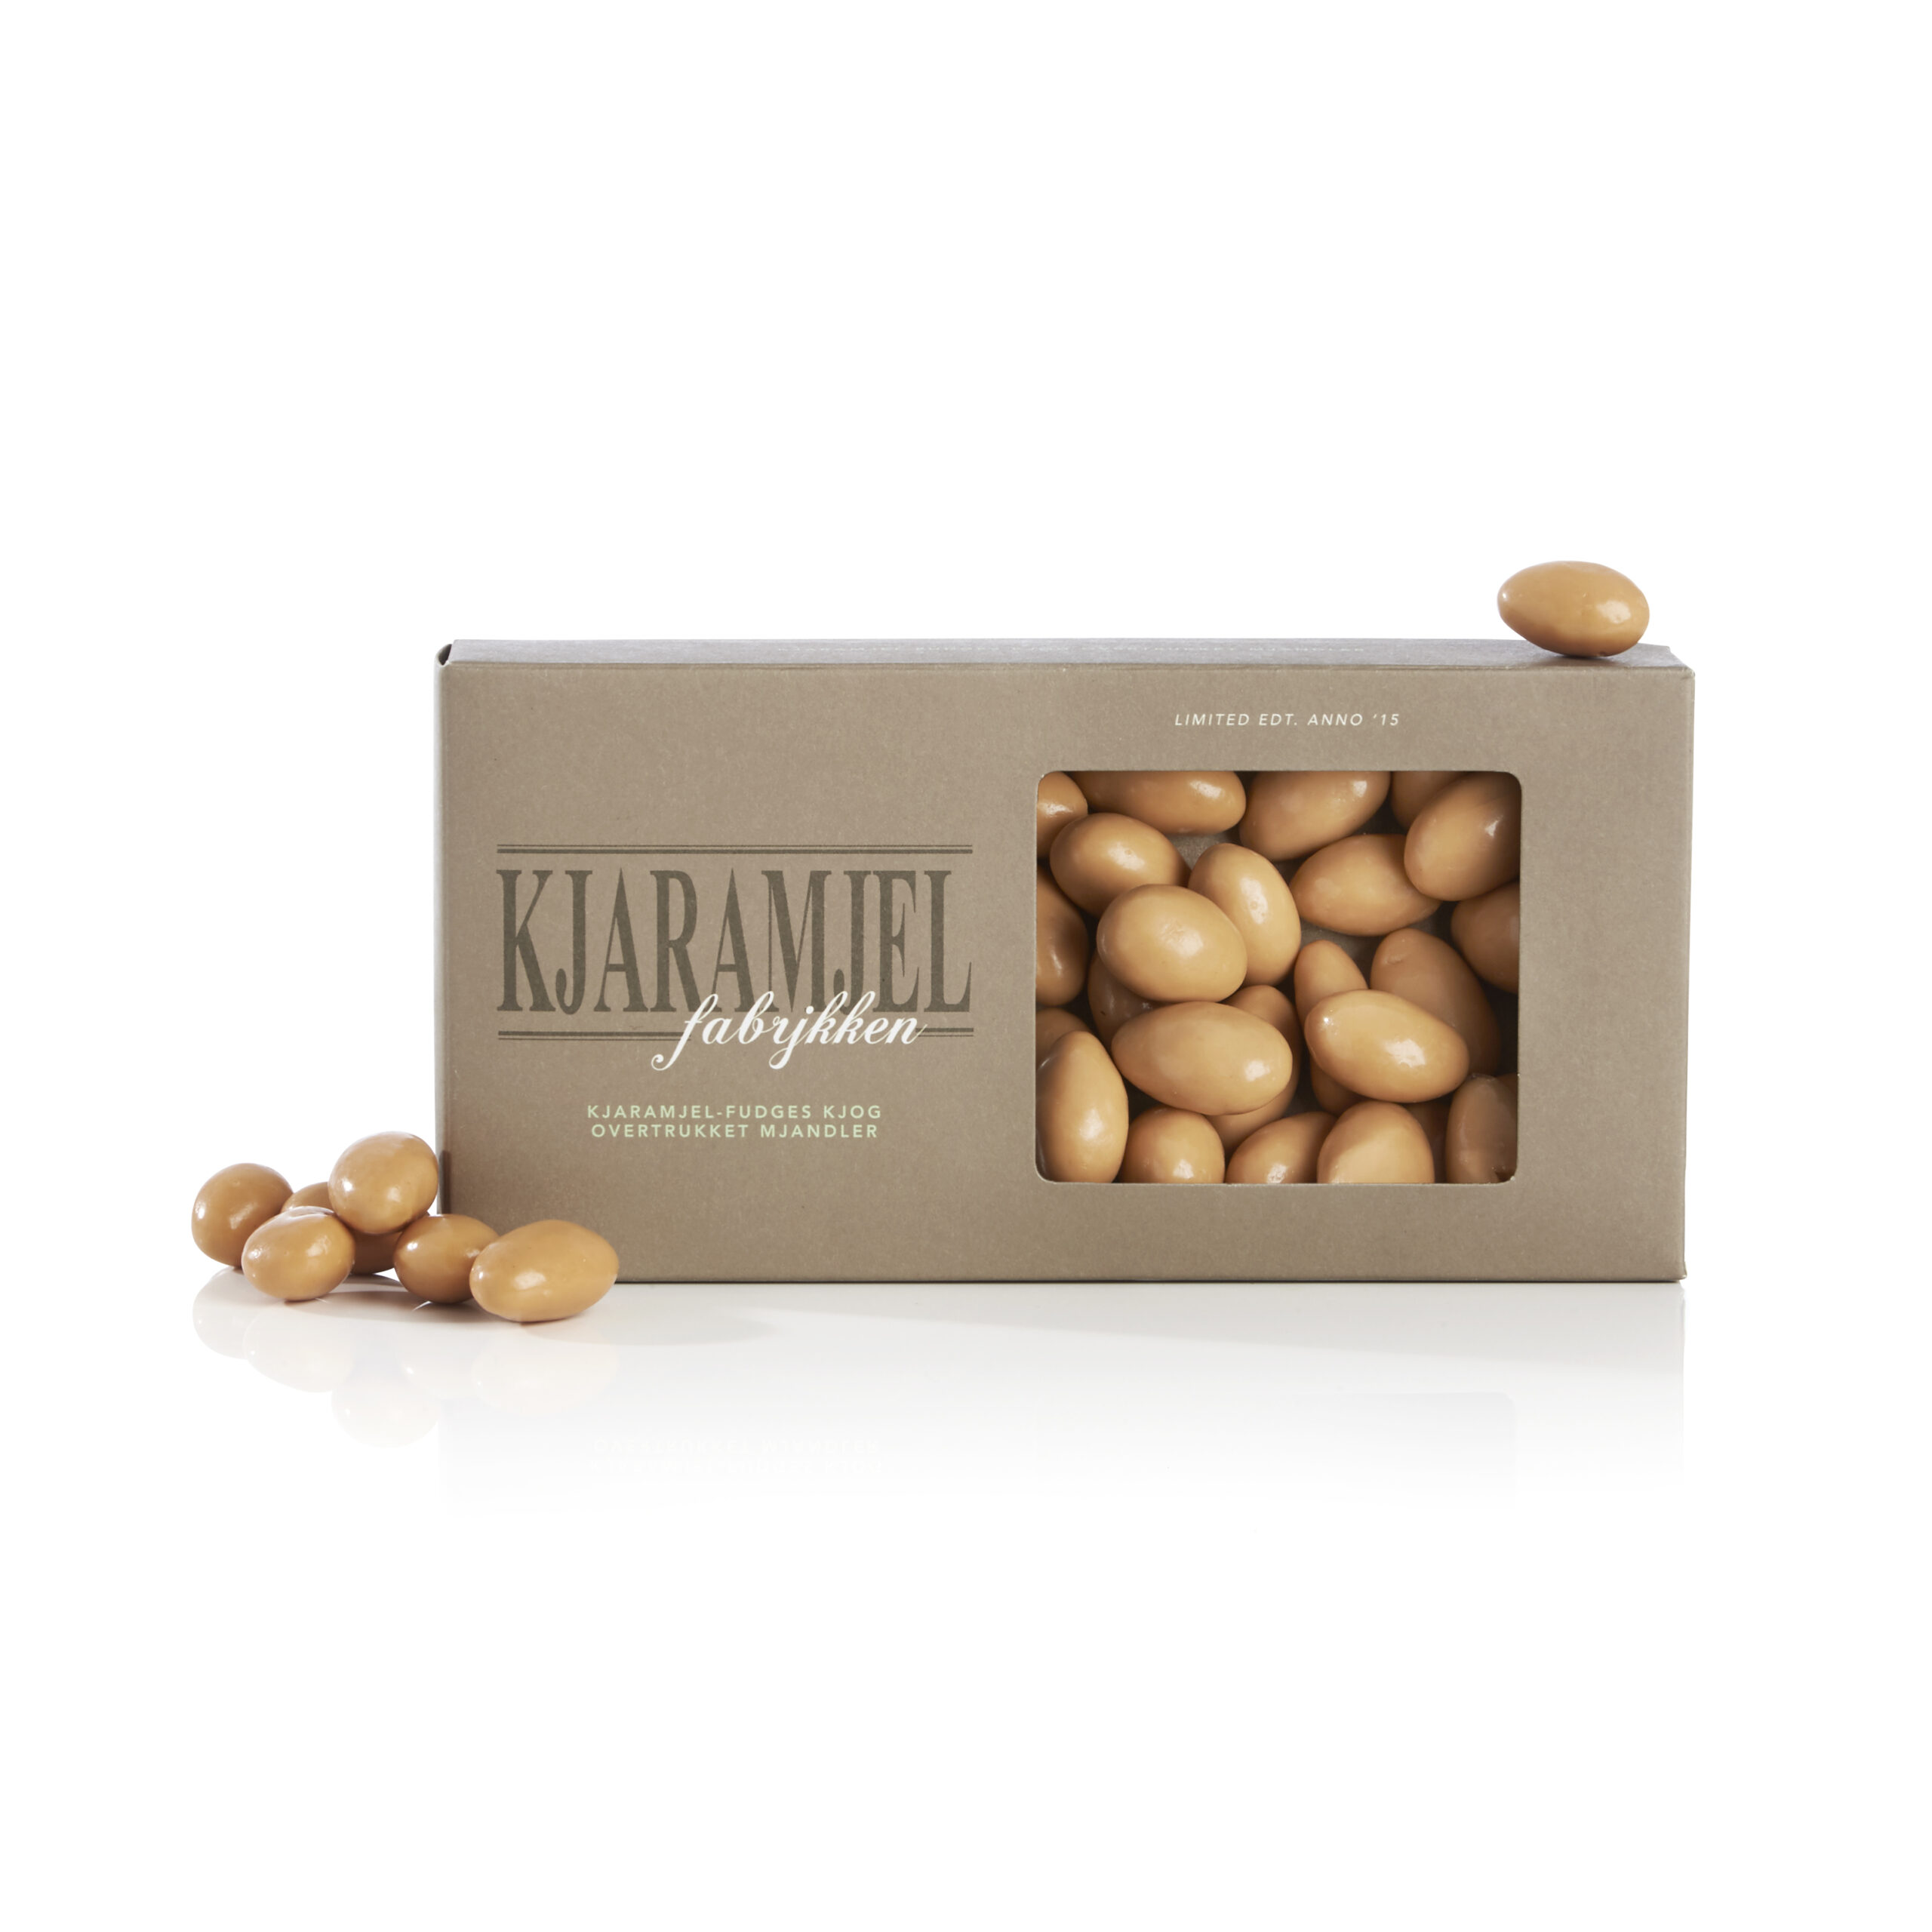 #3 - Kjaramjel-fudge mandler - Mandler m/ karamel fudge